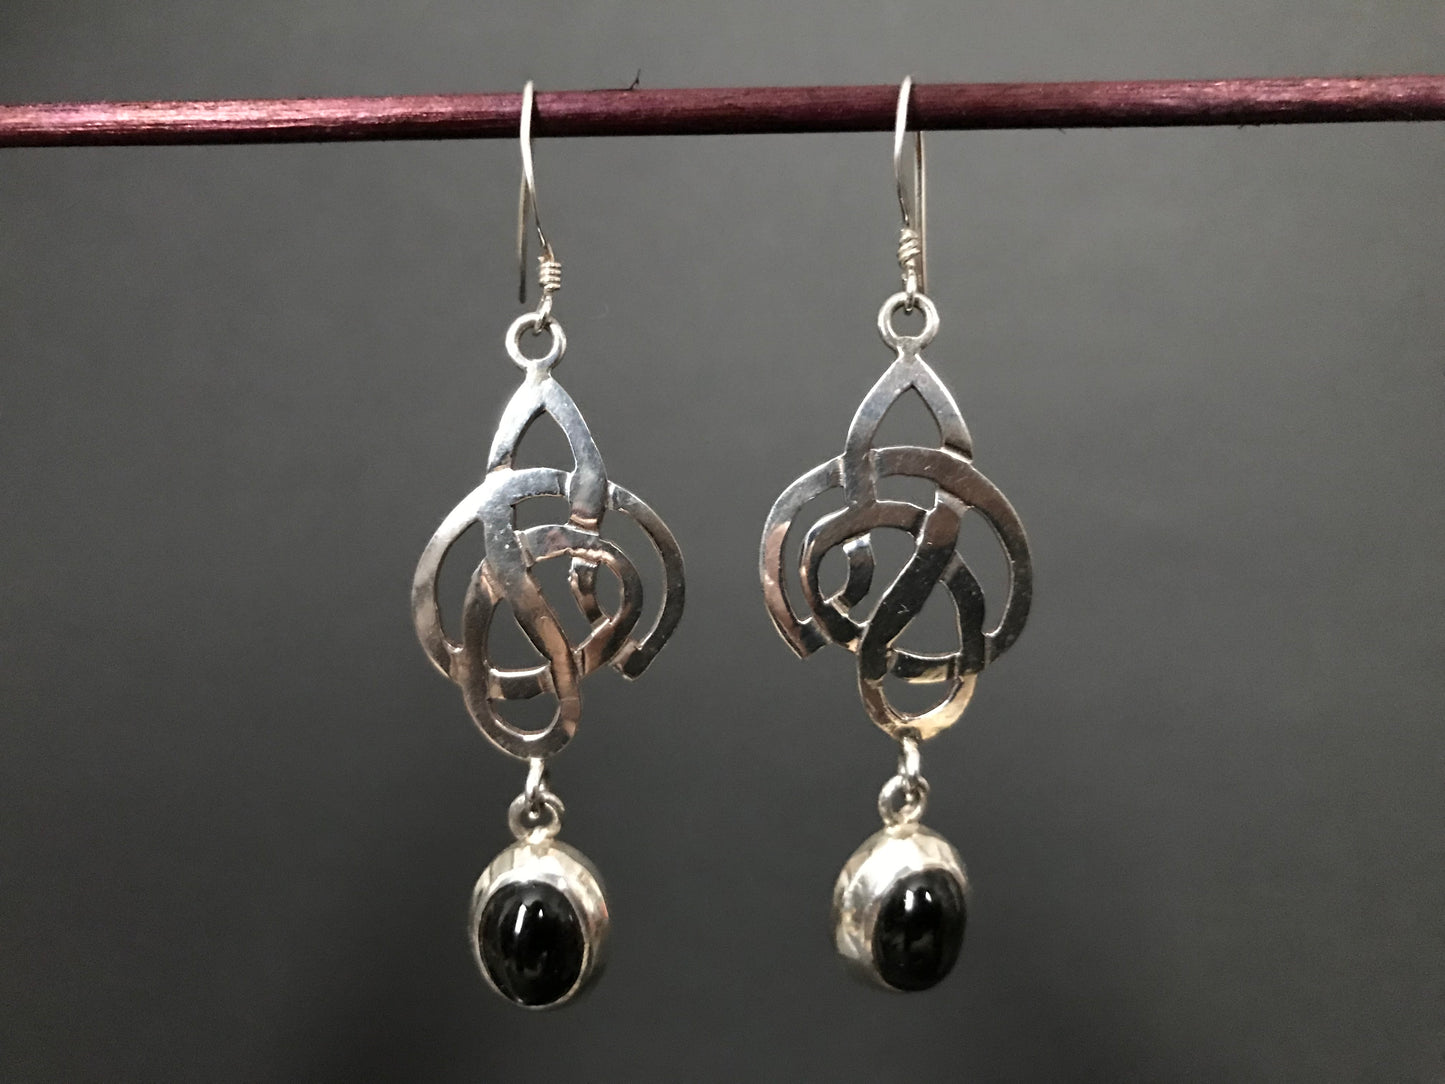 Handmade Celtic Knot Amethyst/Garnet Silver Earring - Konmay London